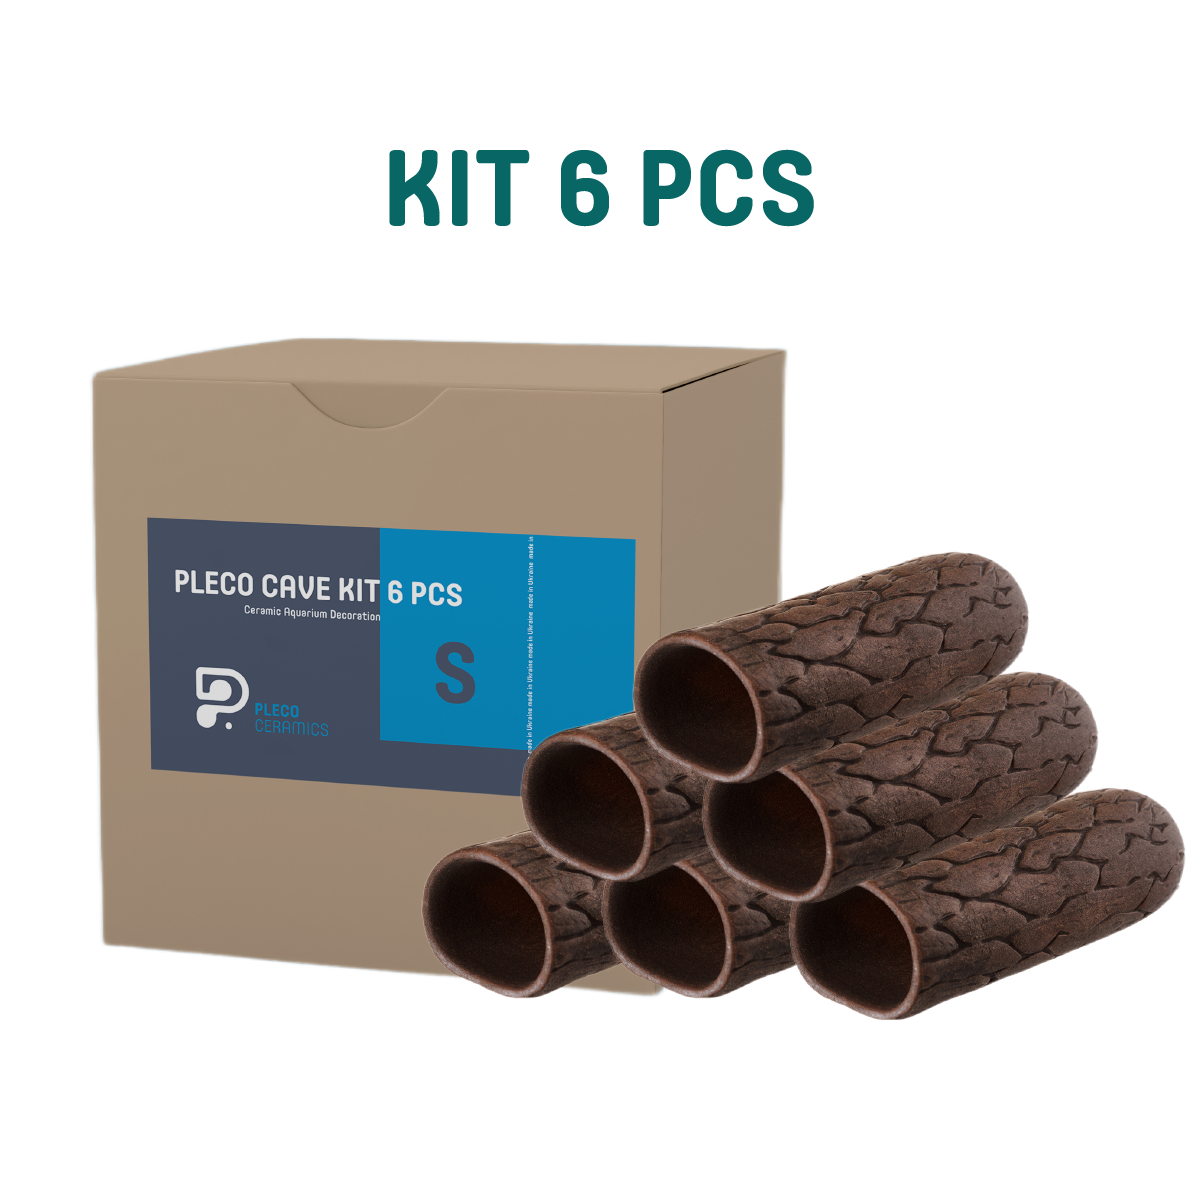 Pleco Cave Kit S size caves 6 pcs